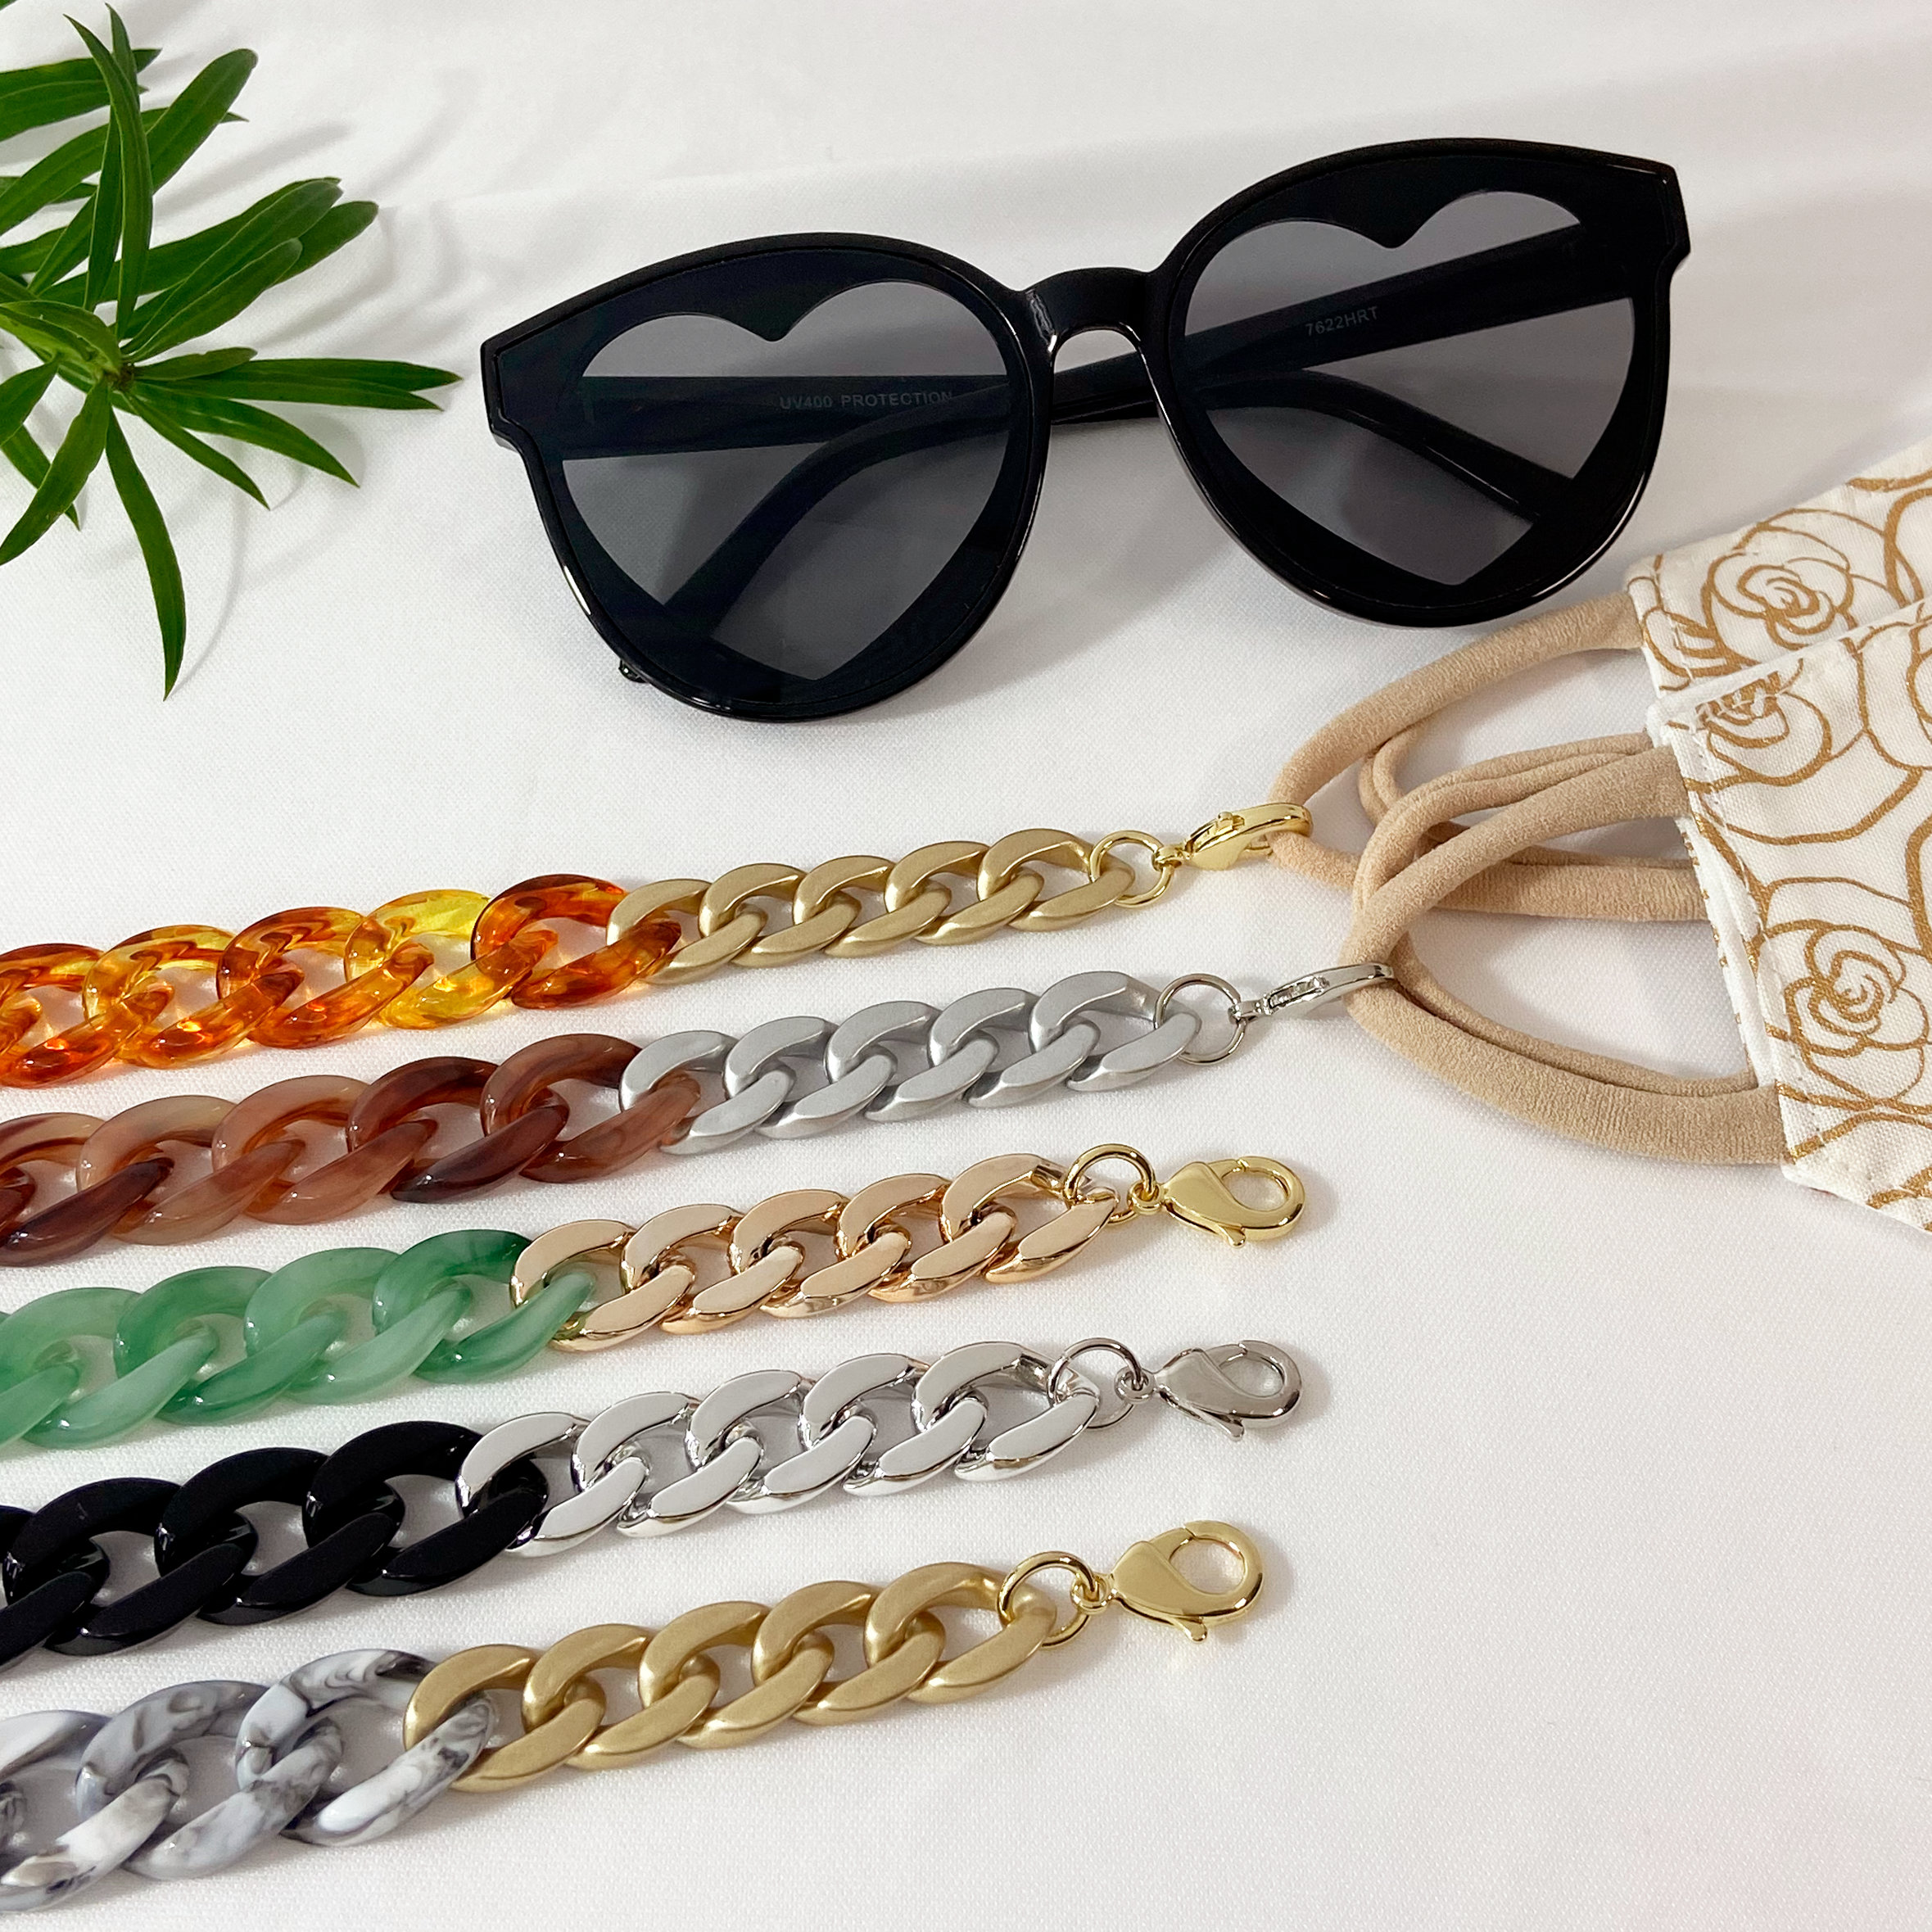  PASTL Sunglasses Neck Strap Thick Acrylic Chain